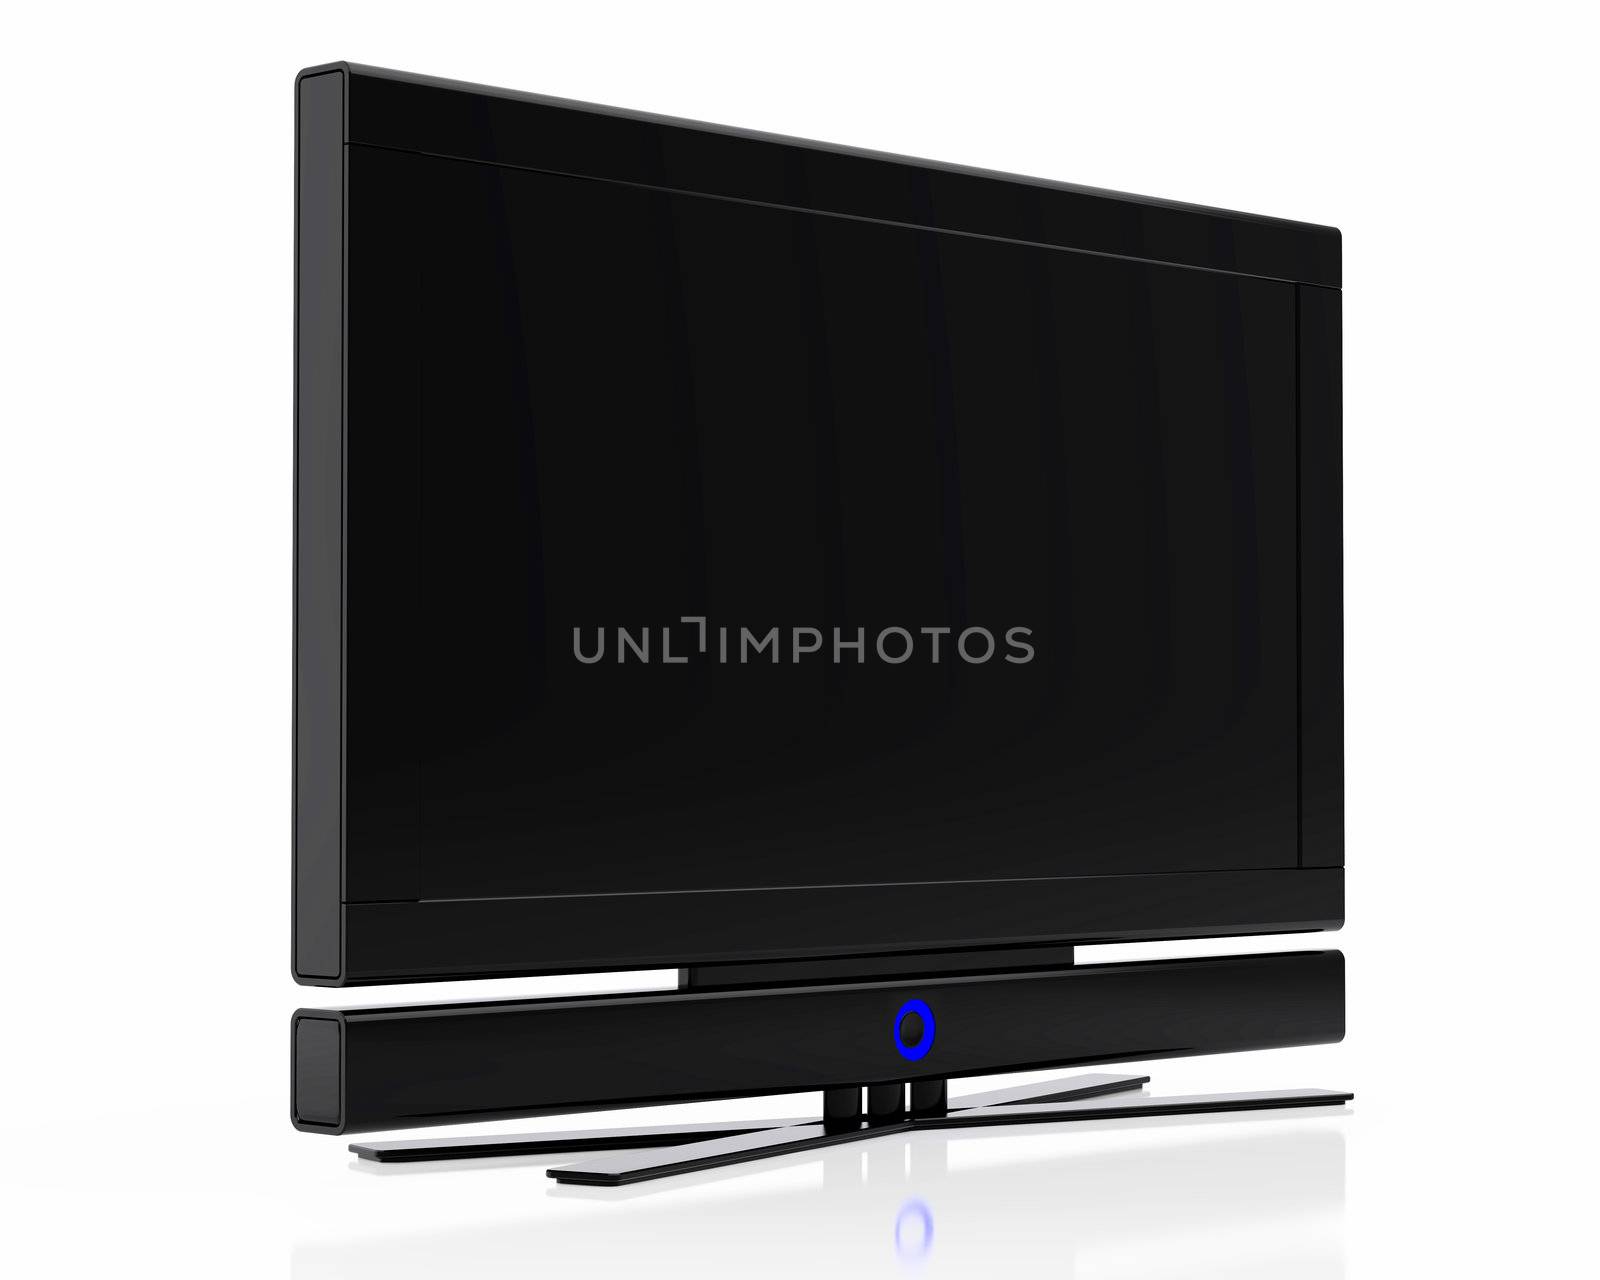 High resolution image black plasma TV. 3d illustration over  white backgrounds.